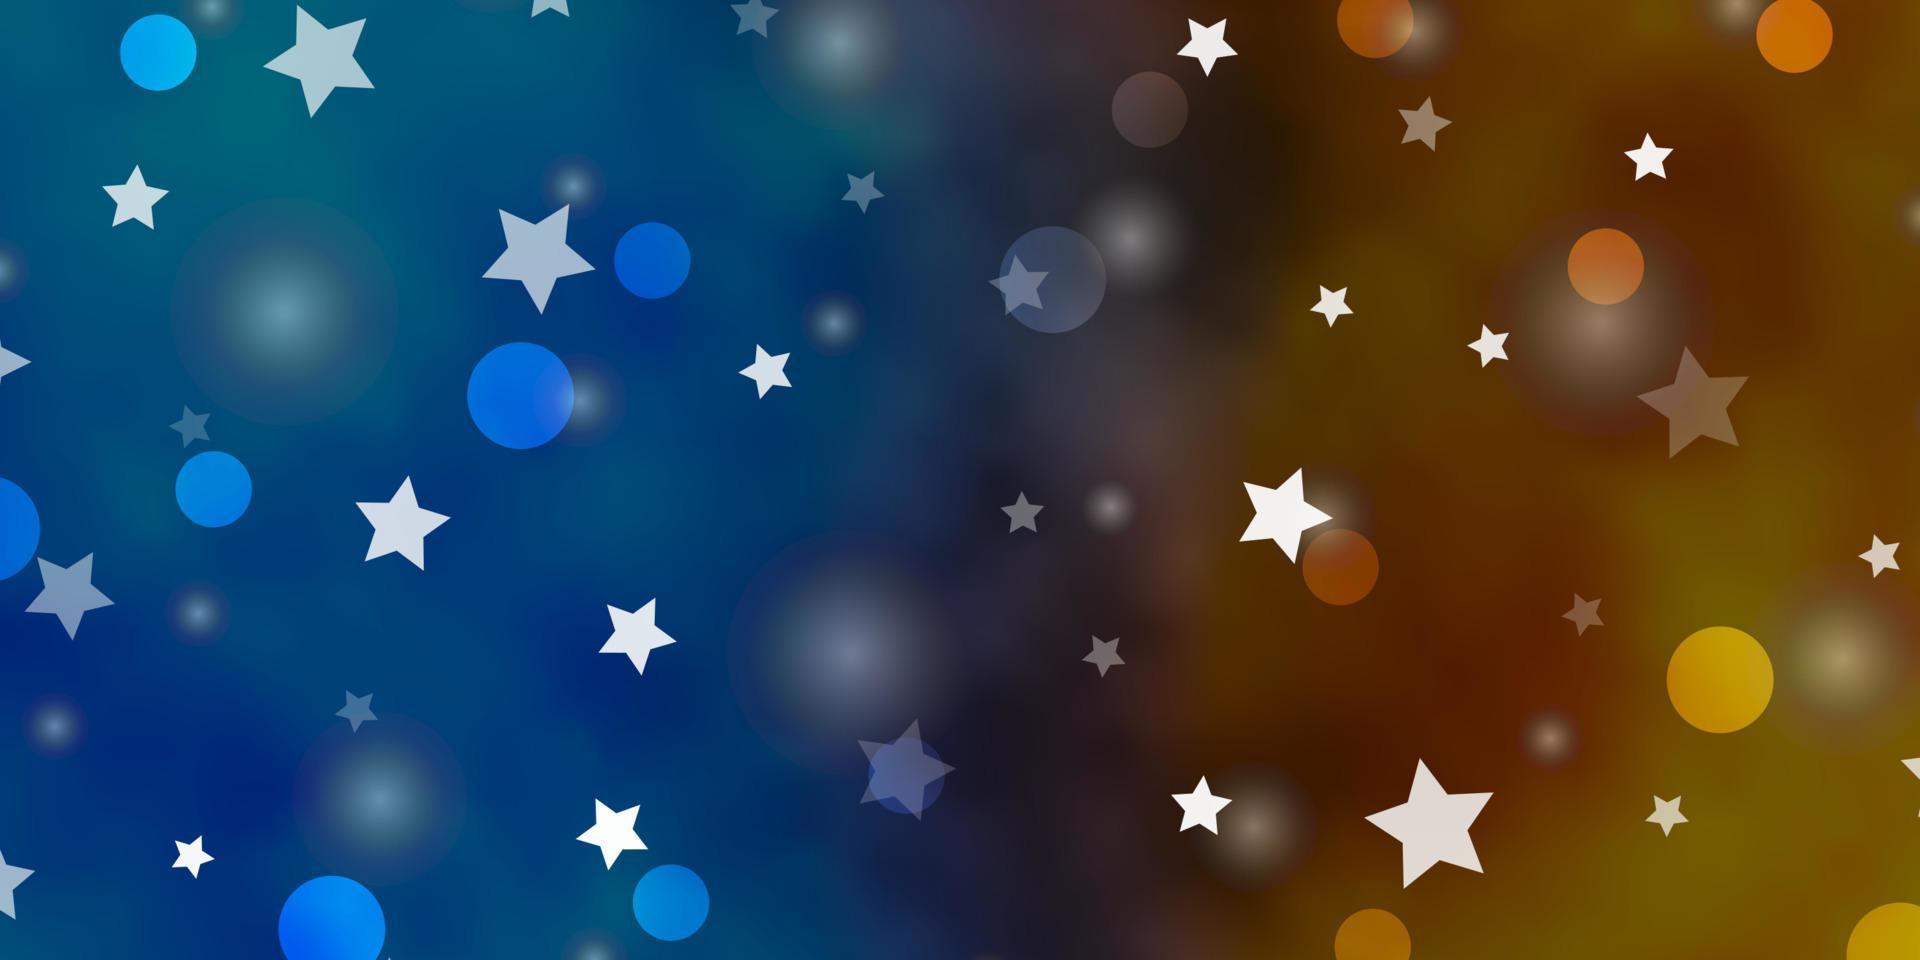 ljusblå, gul vektorbakgrund med cirklar, stjärnor. vektor